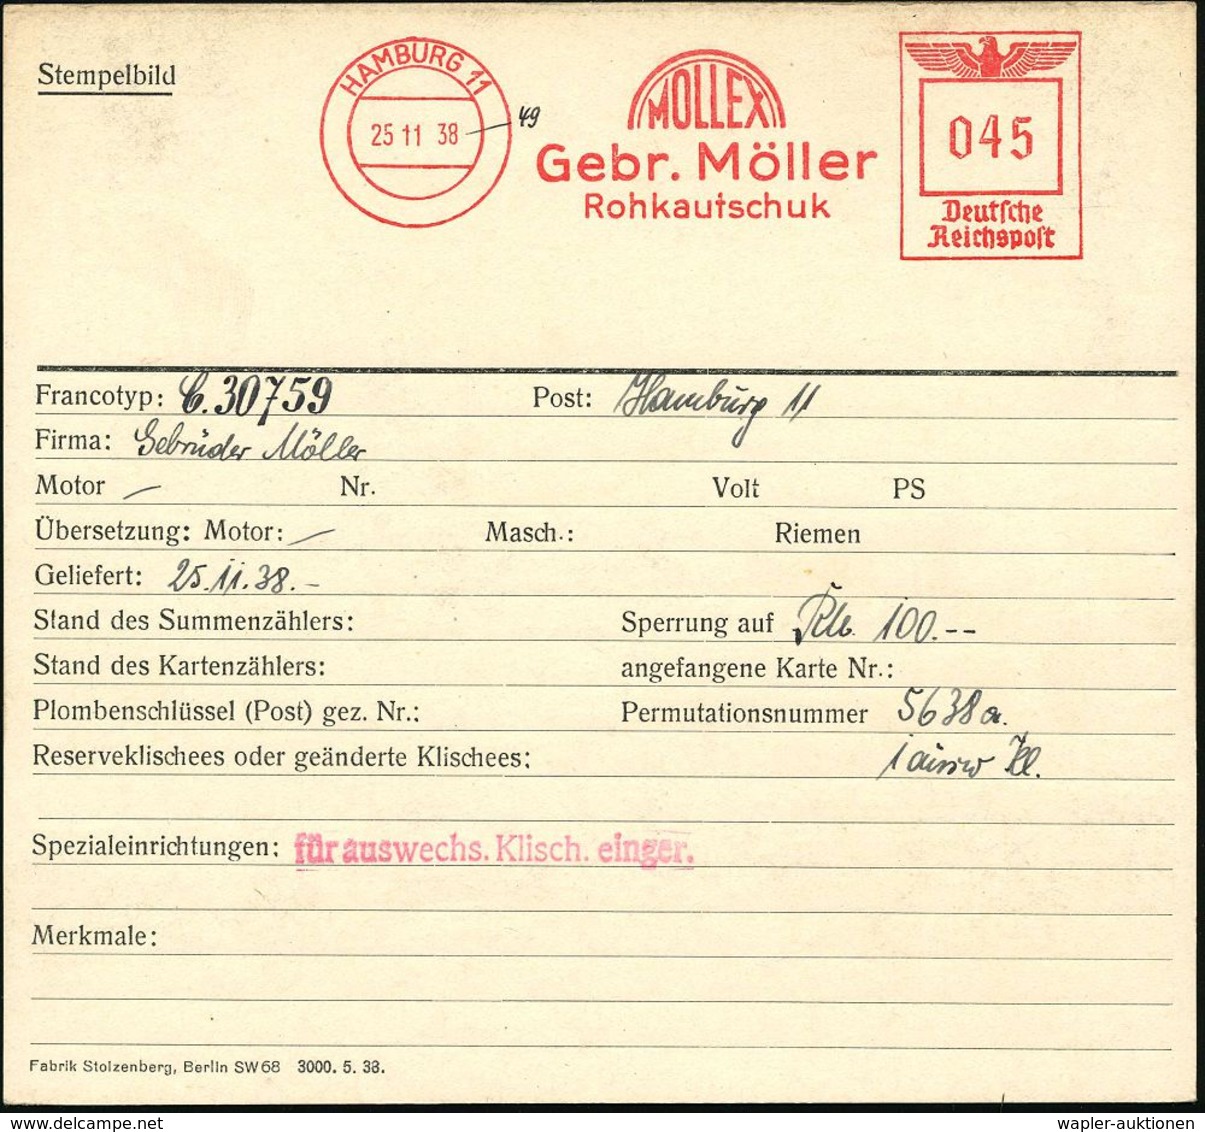 GUMMI / KAUTSCHUK : HAMBURG 11/ MOLLEX/ Gebr.Möller/ Rohkautschuk 1938 (25.11.) AFS 045 Pf., Archivmuster "Reichsadler"  - Chemie